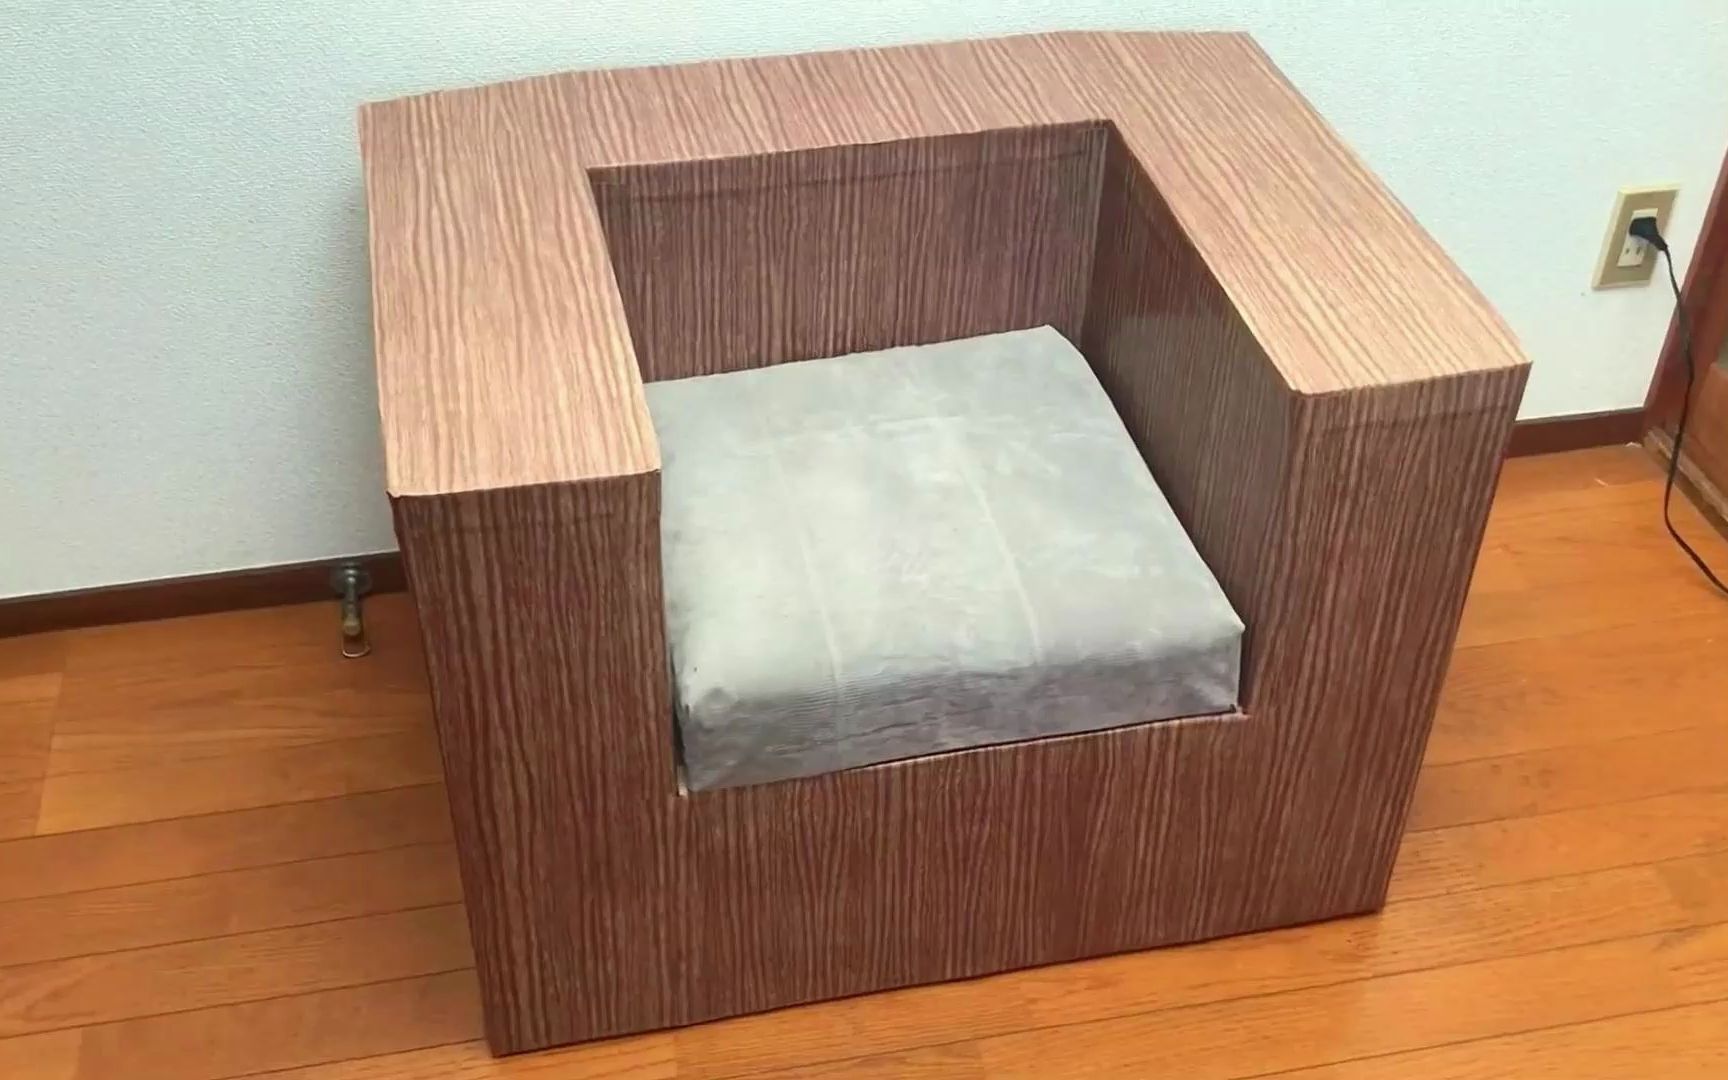 快递的纸盒还能废物利用制作成舒适且实用的沙发,真是大开眼界啊